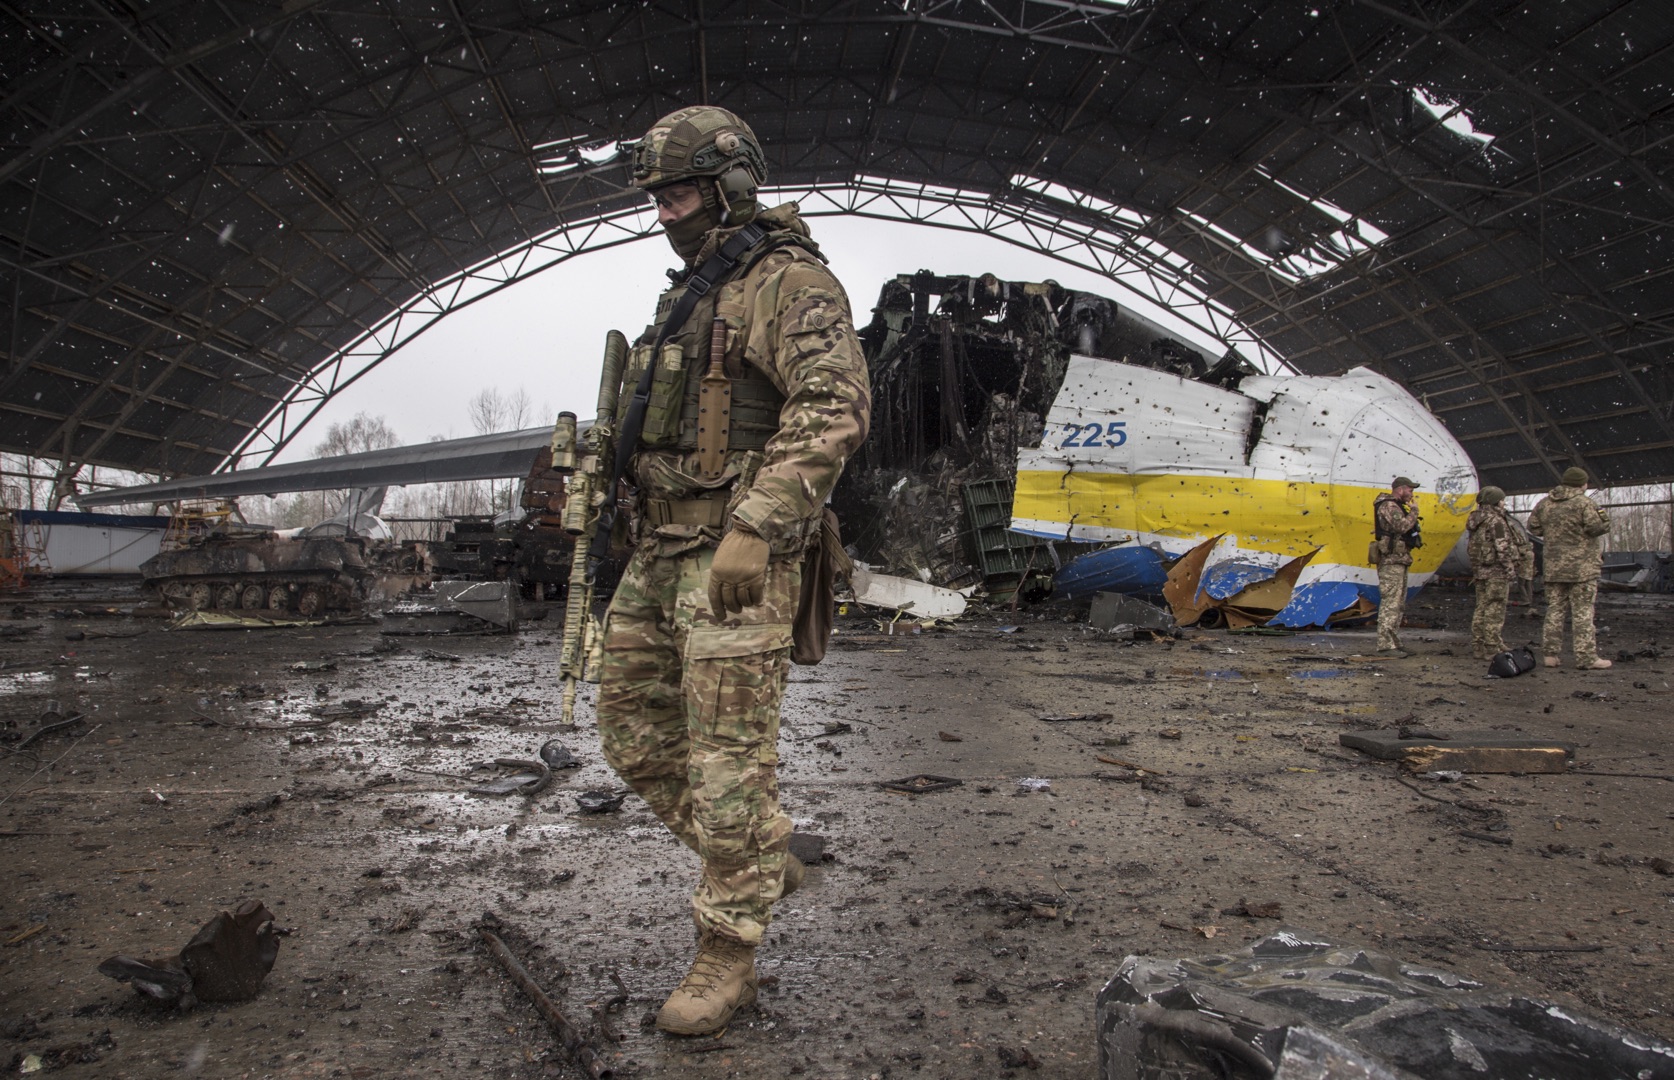 Ουκρανία: 180.000 νεκροί και τραυματίες στον ρωσικό στρατό,100.000 στην ουκρανική πλευρά, σύμφωνα με τη Νορβηγία